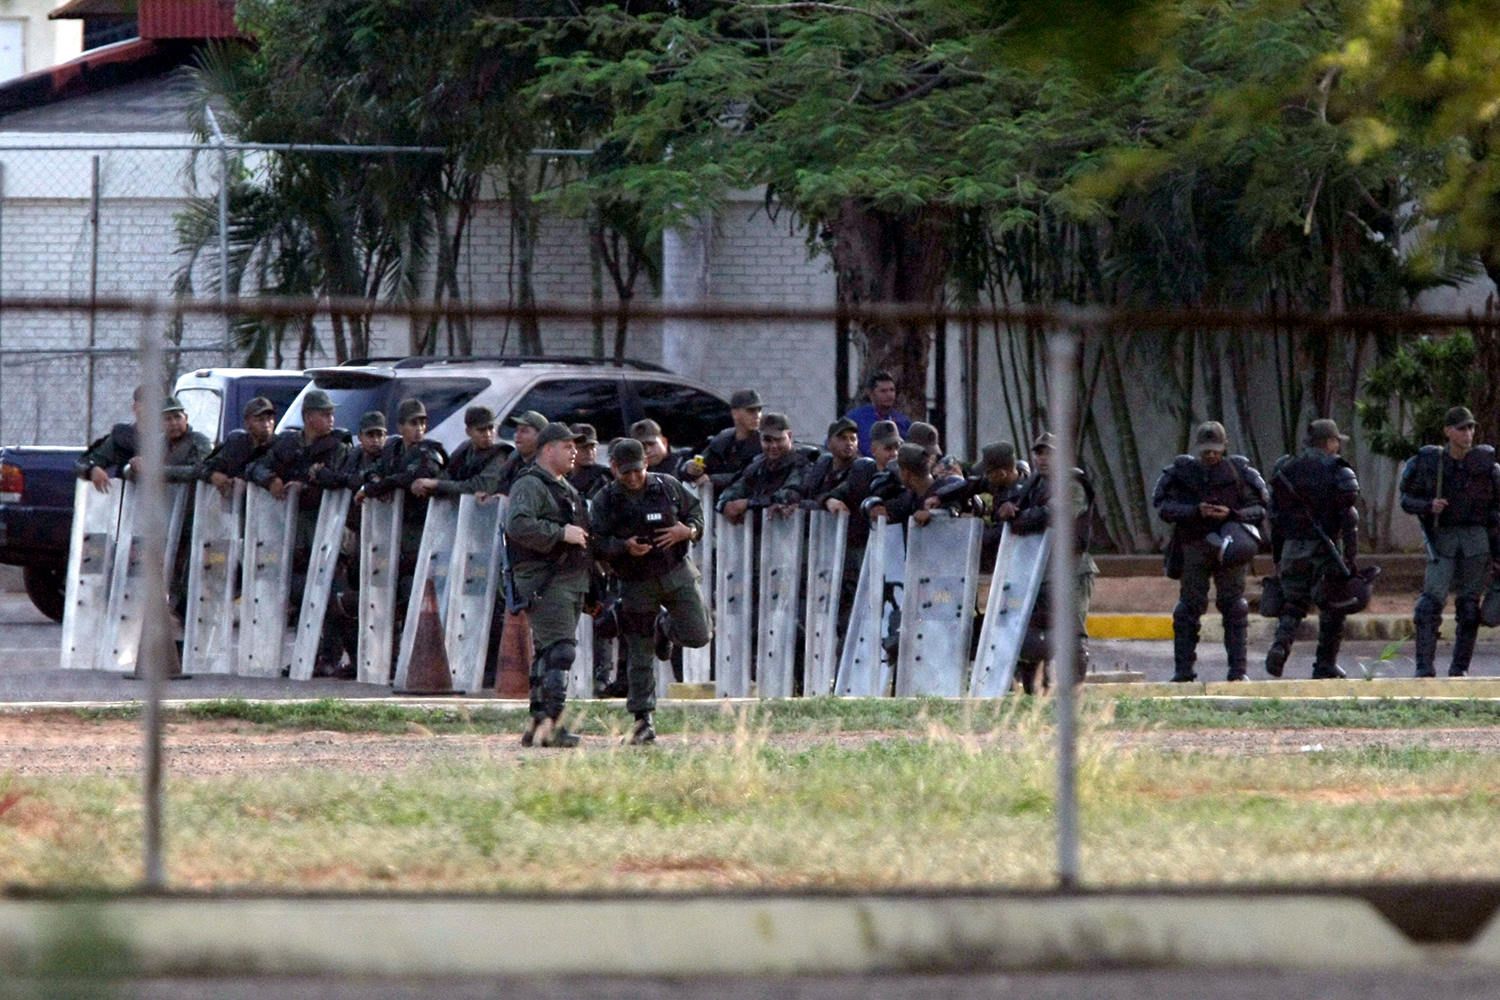 Un vídeo de presos en Venezuela disparando al aire con ametralladoras conmociona a Latinoamérica